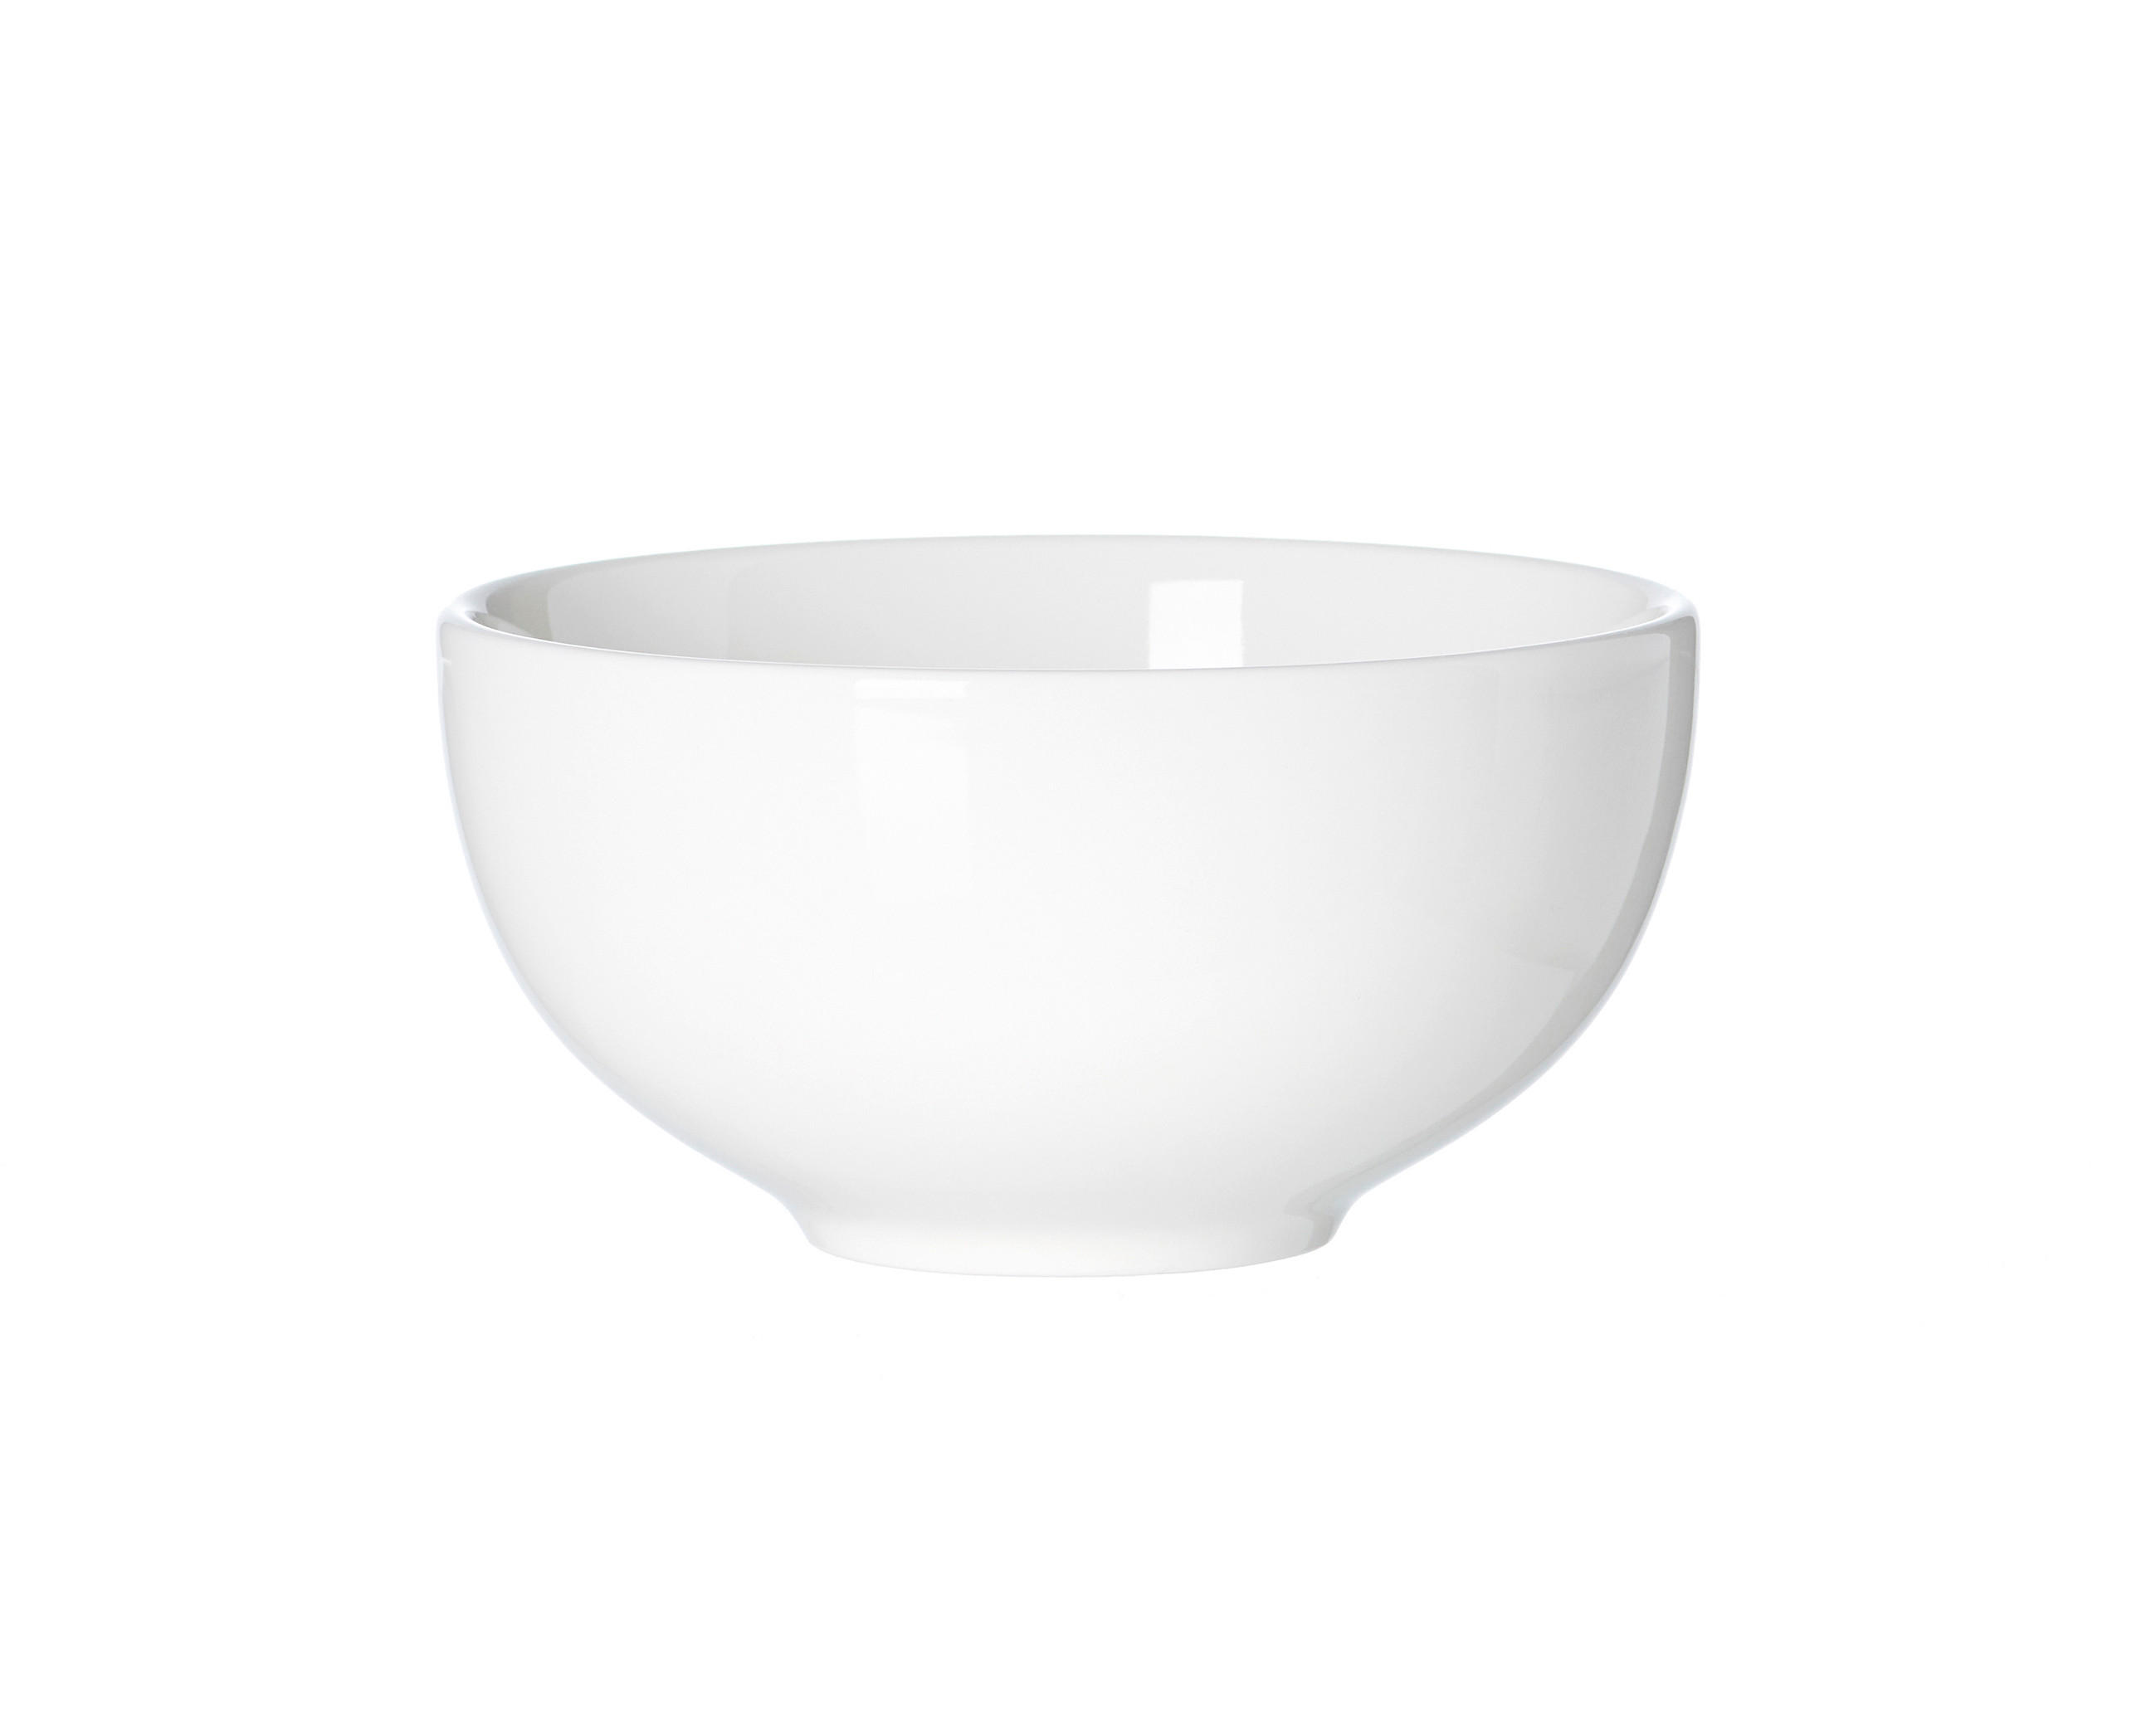 SCHALE Keramik Porzellan  - Weiß, Design, Keramik (11/11/6cm) - Ritzenhoff Breker